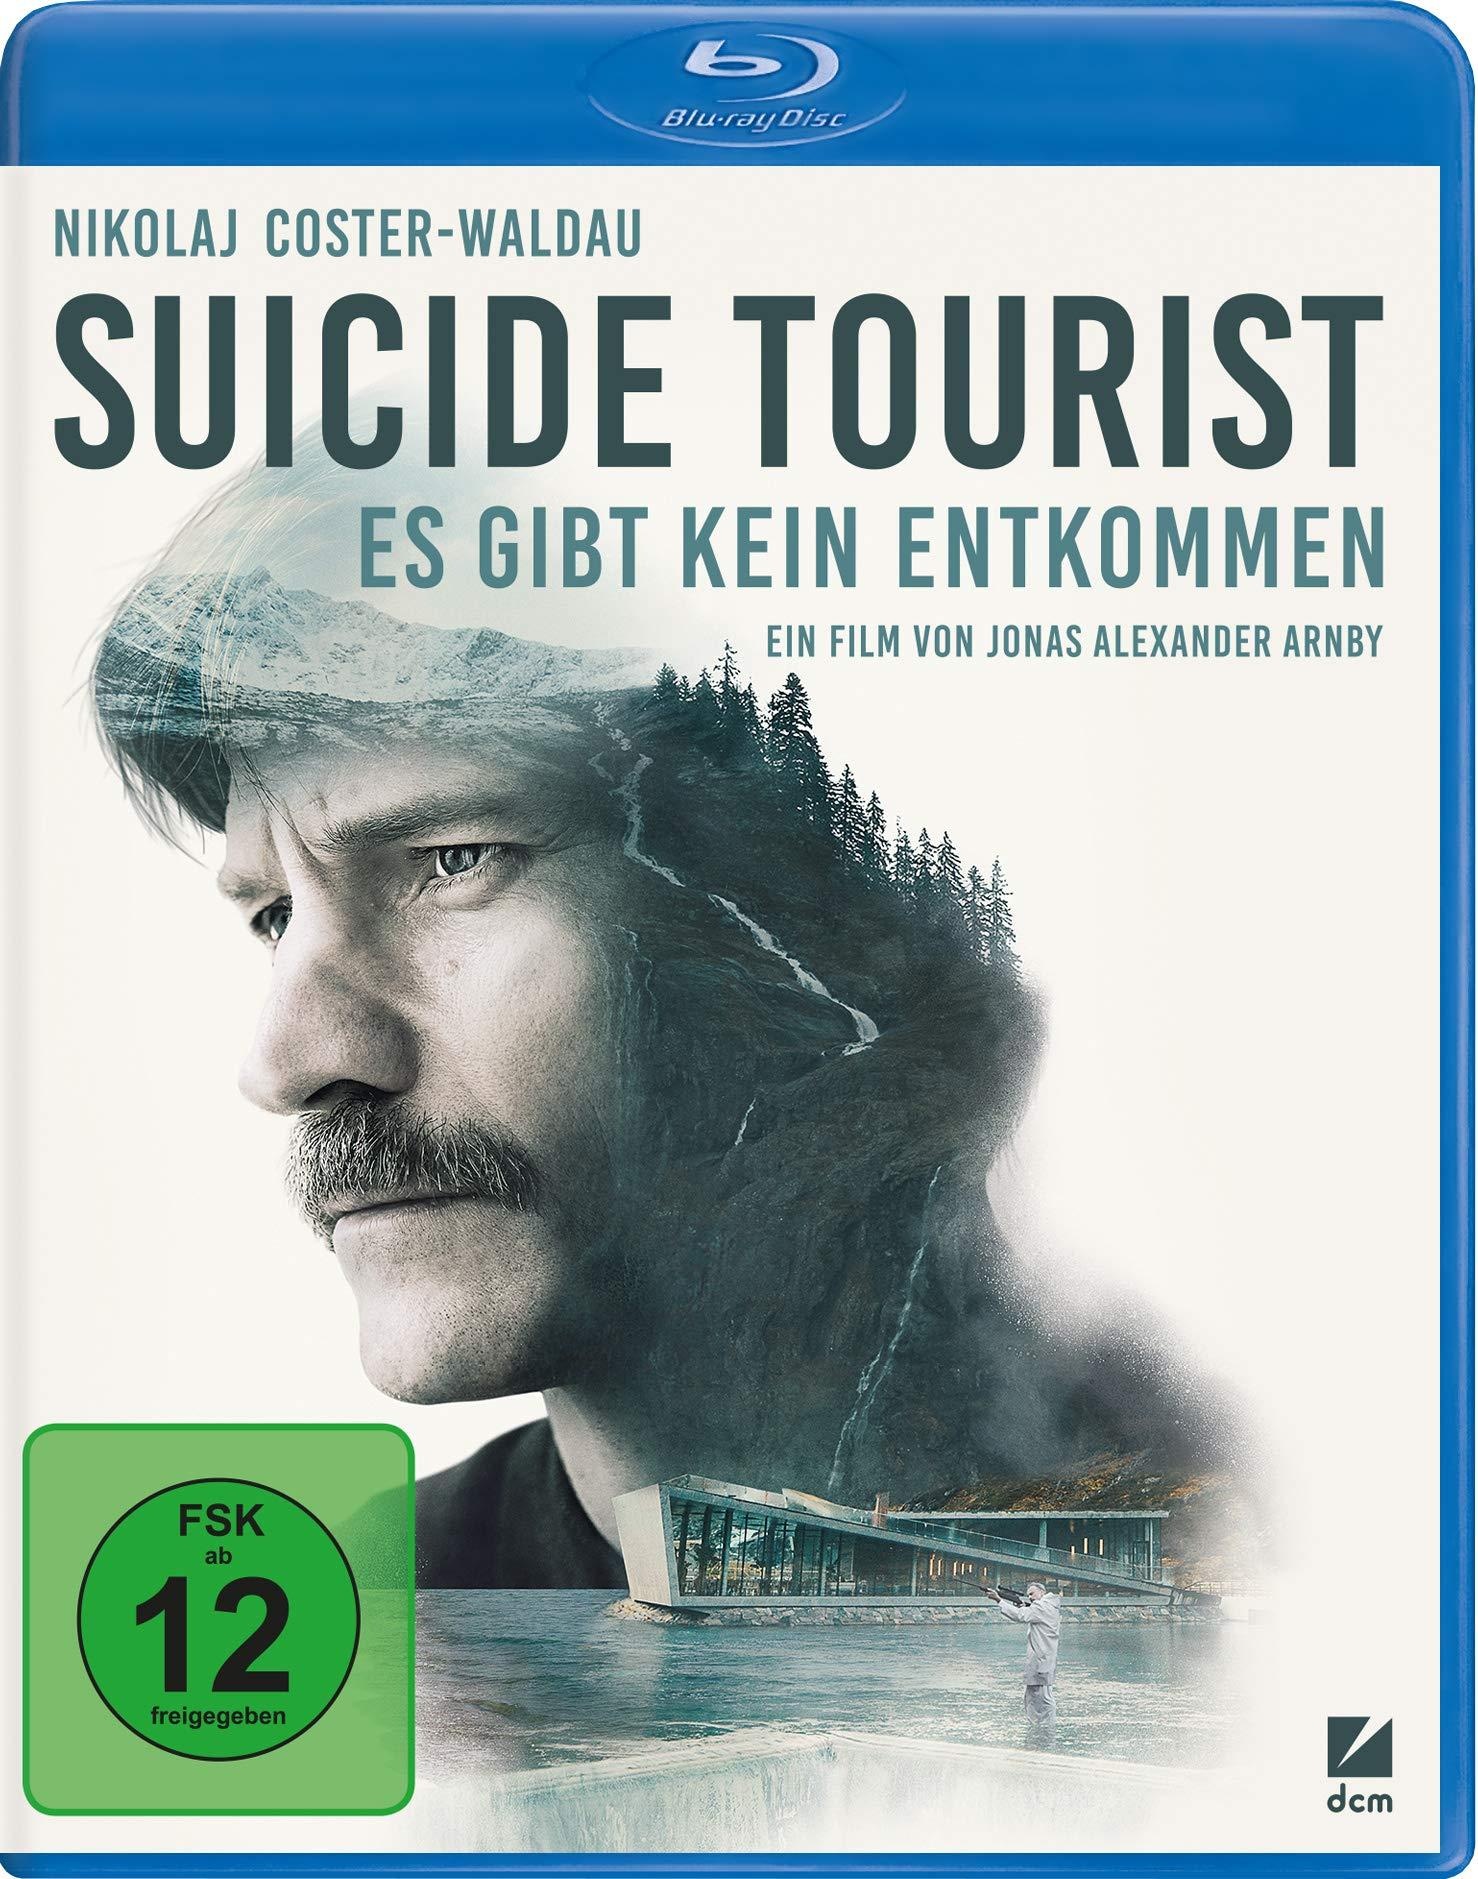 Suicide Tourist - Es gibt kein Entkommen [Blu-ray] (Neu differenzbesteuert)